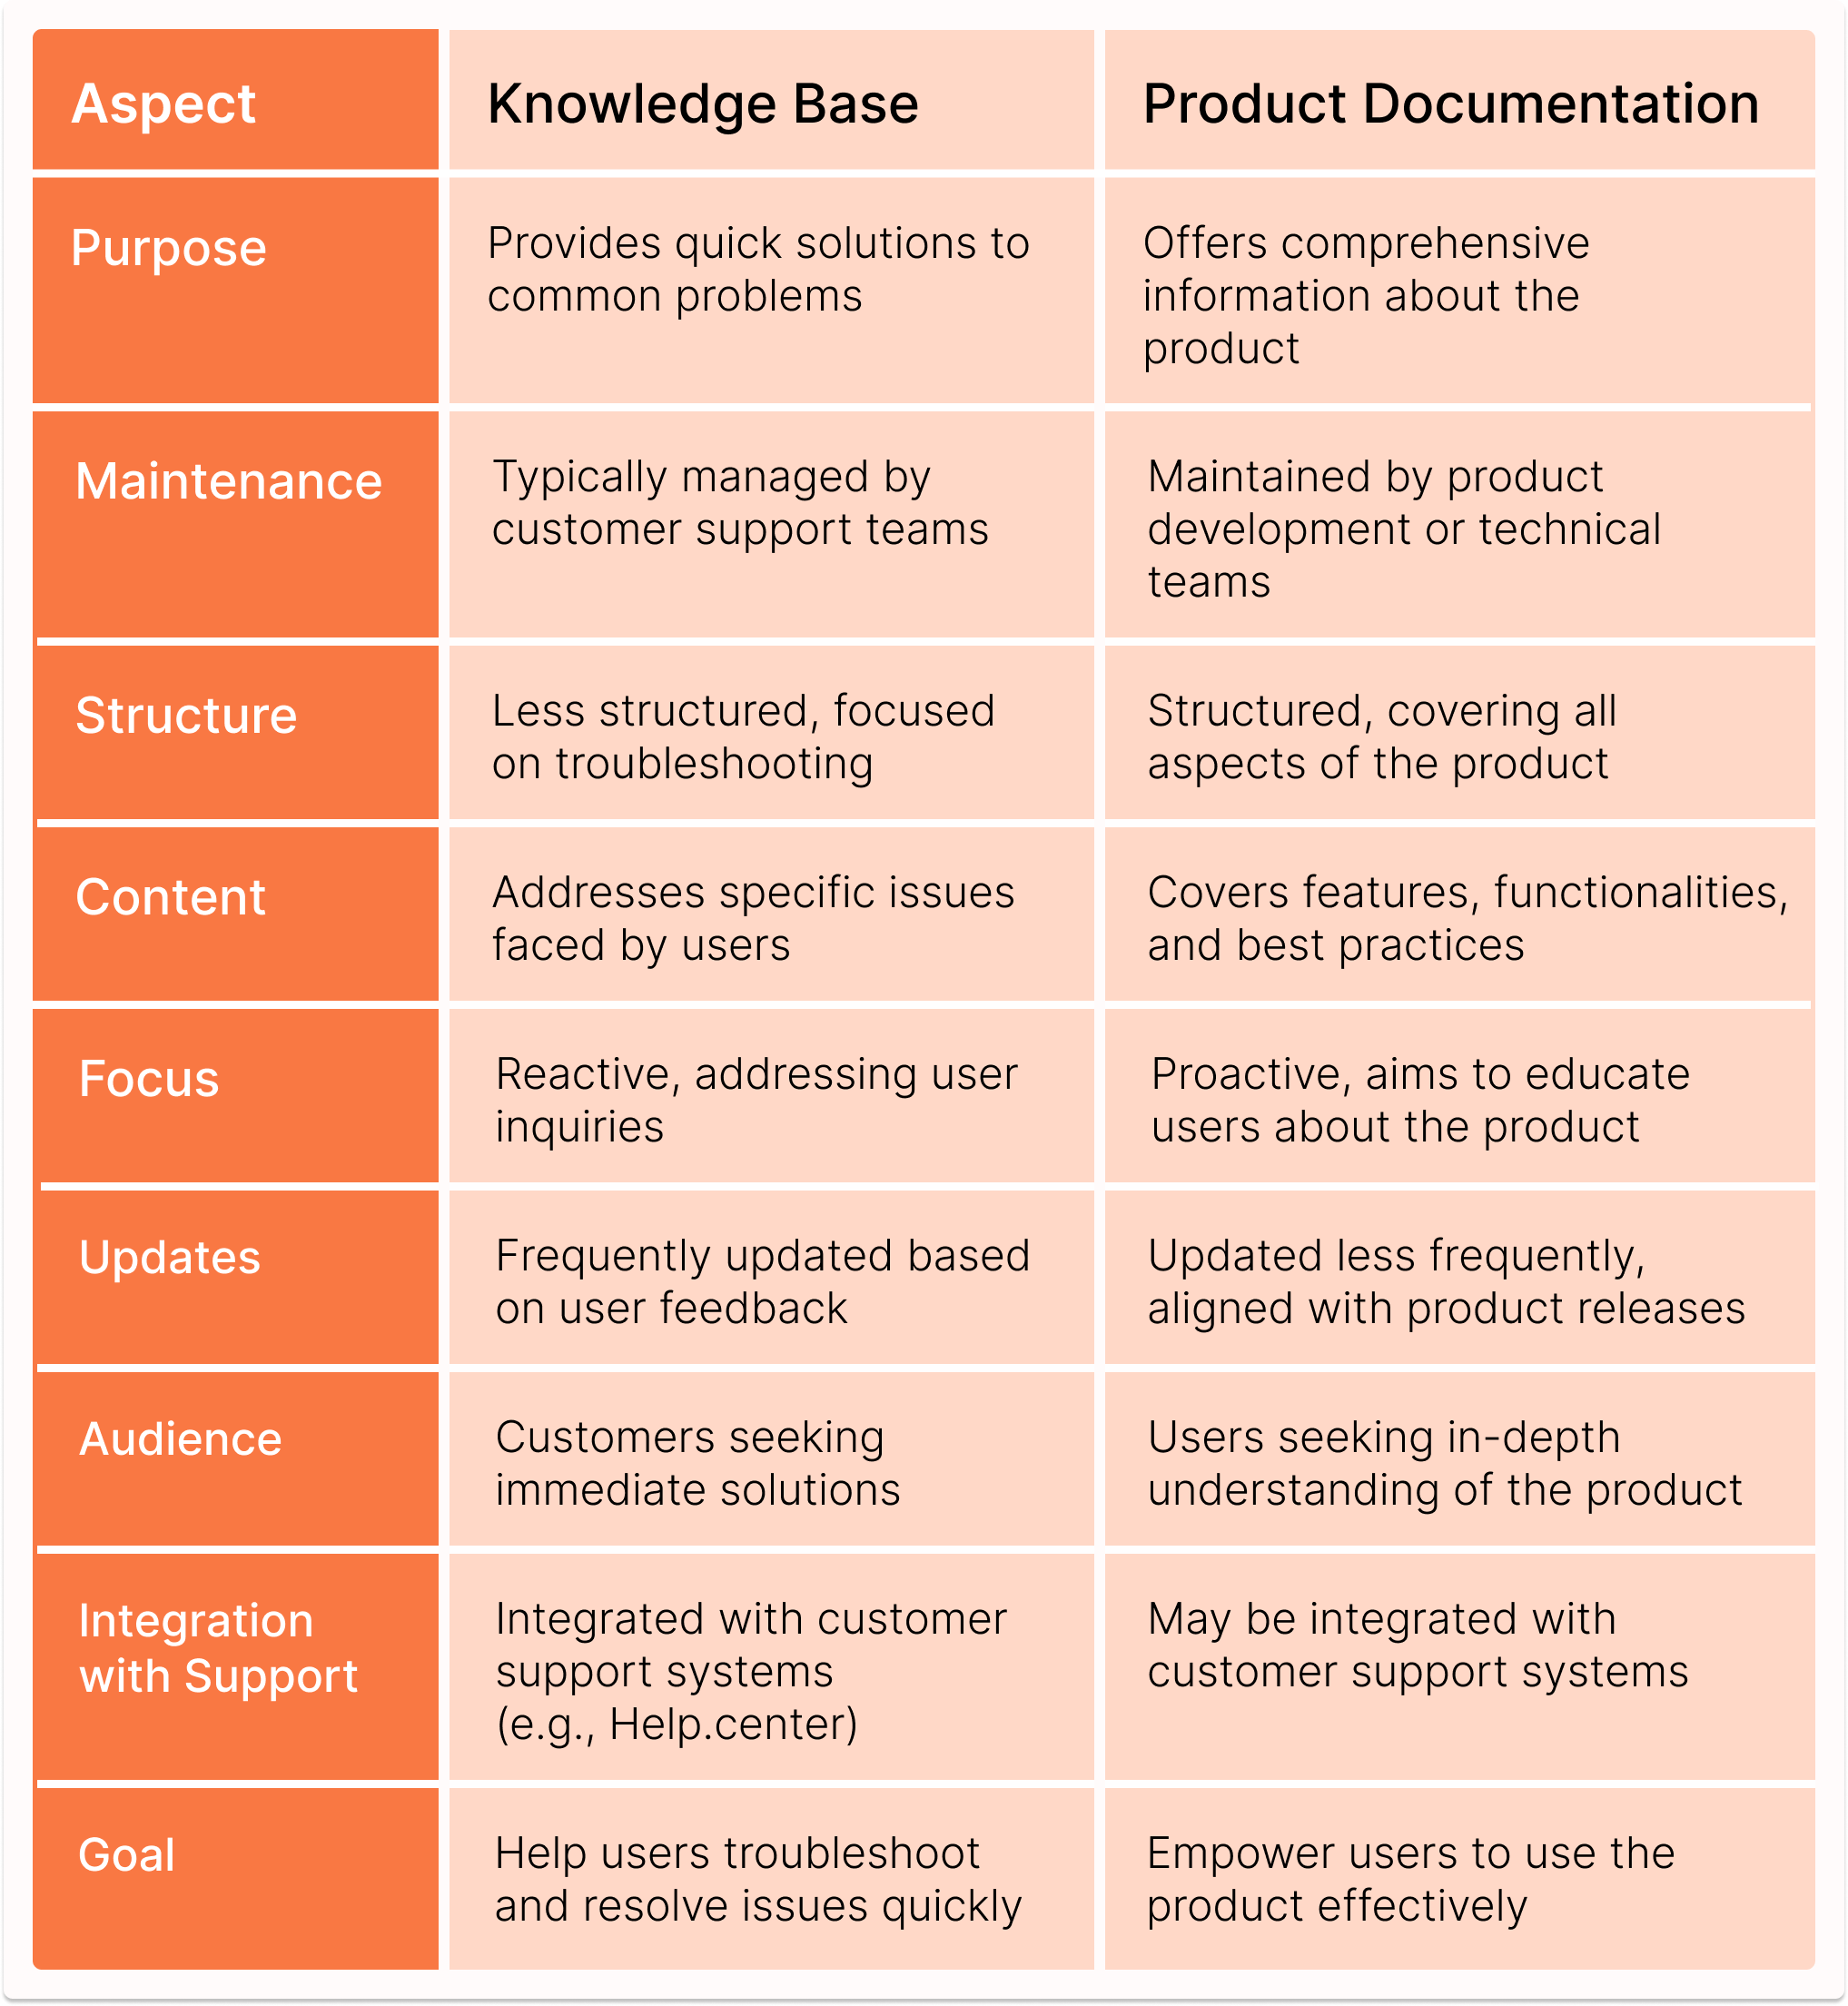 Product Documentation vs Knowledge Base